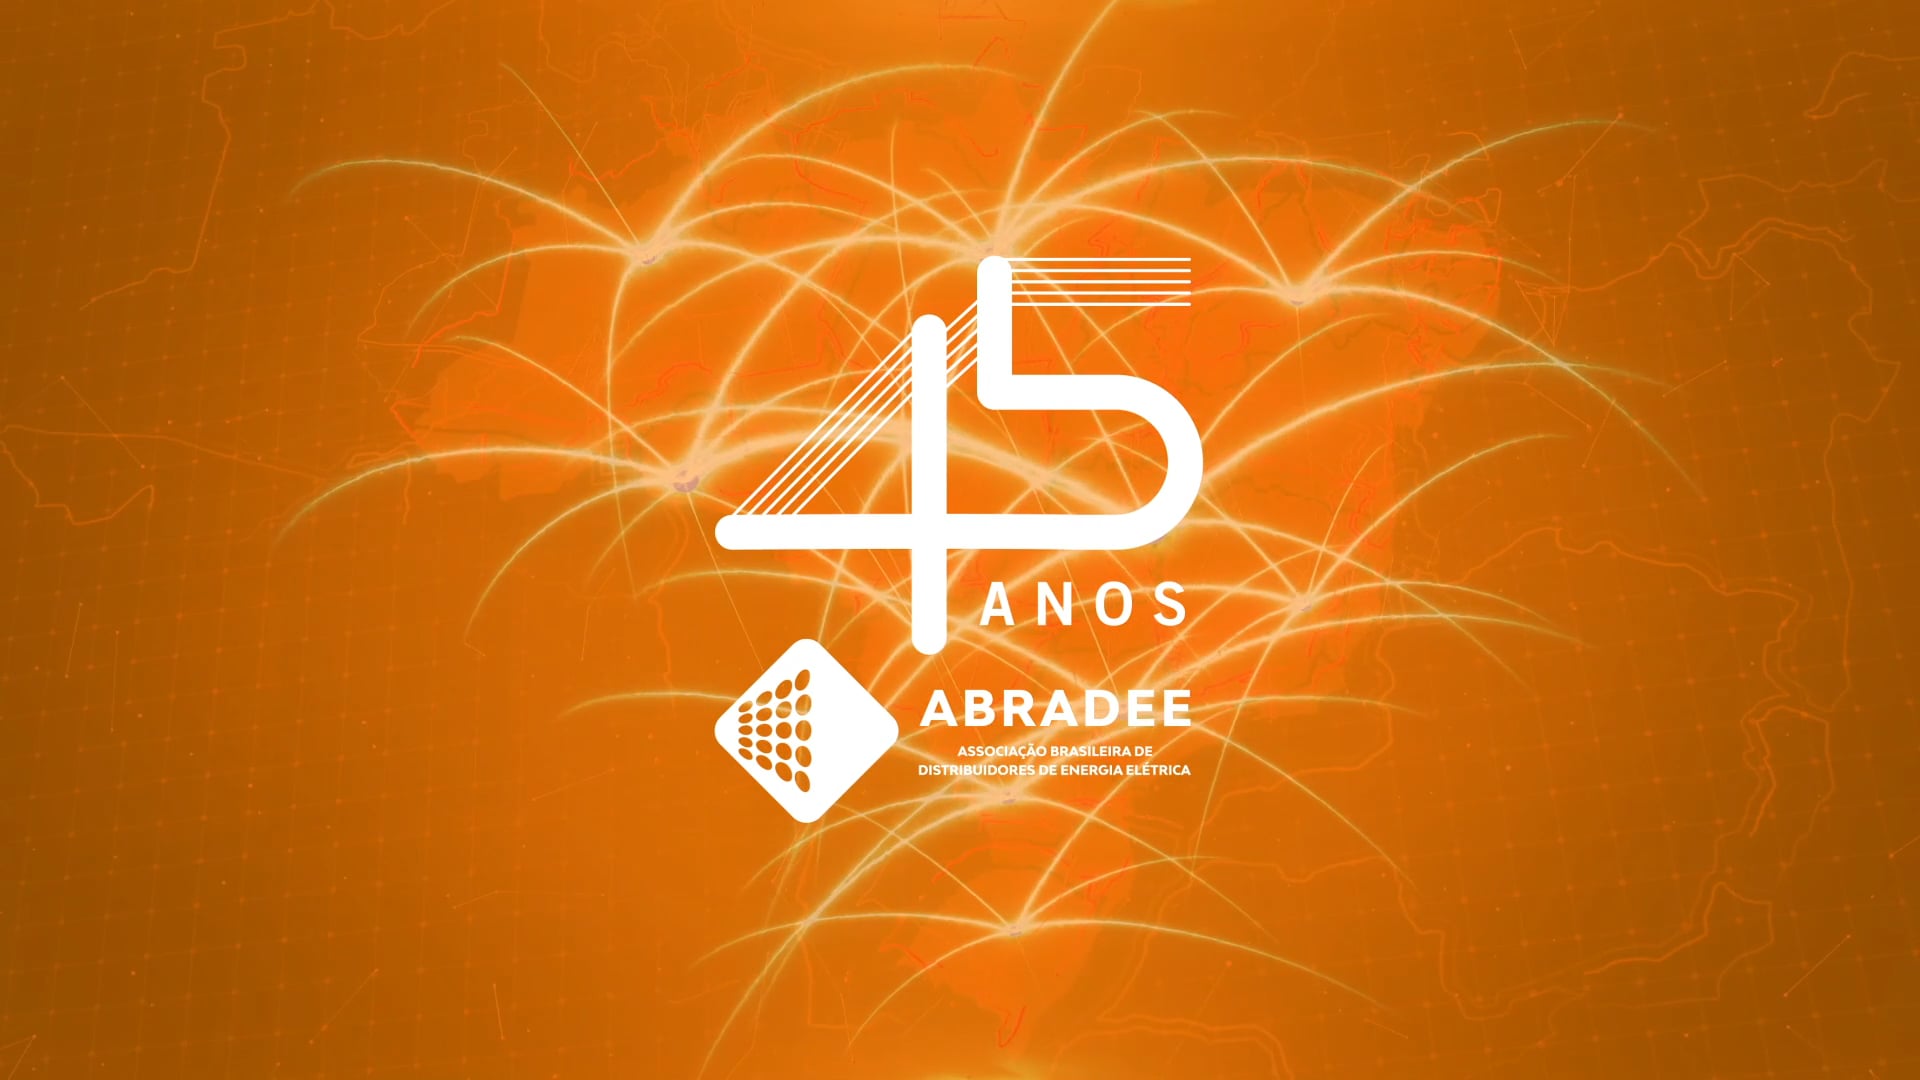 ABRADEE 45 ANOS - Vídeo Institucional Comemorativo